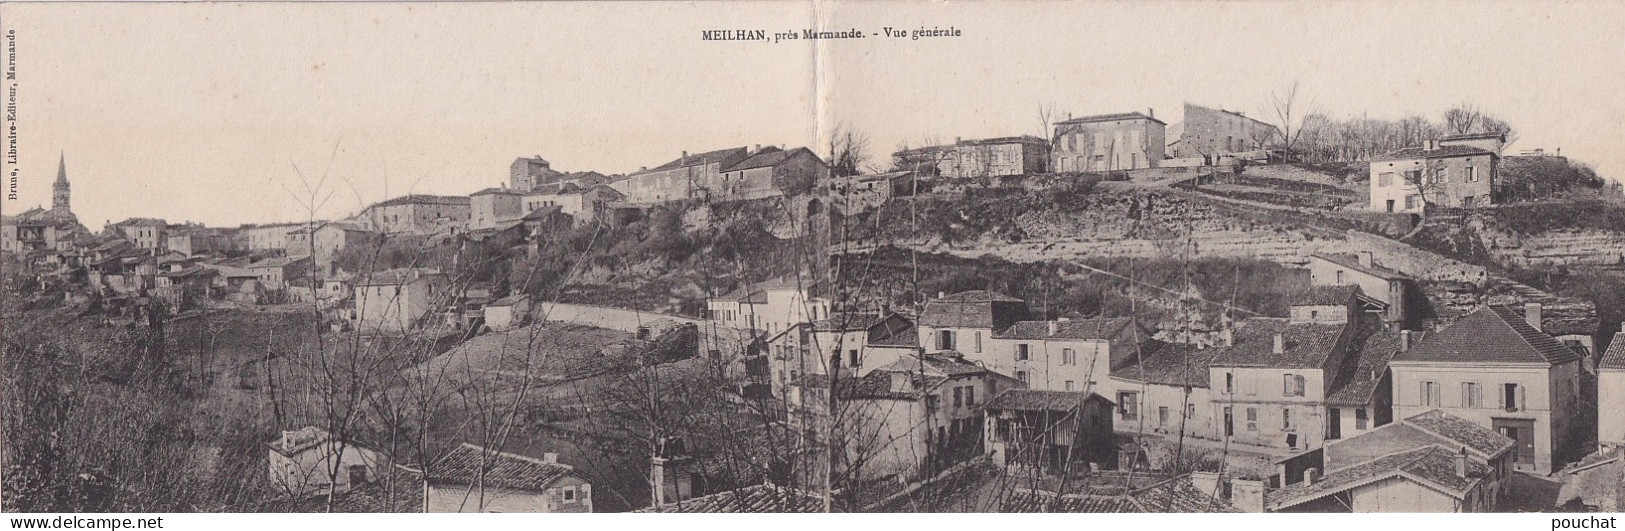 E22-47) MEILHAN , PRES MARMANDE - VUE GENERALE - CARTE PANORAMIQUE A  2 VOLETS - 2 SCANS ) - Meilhan Sur Garonne